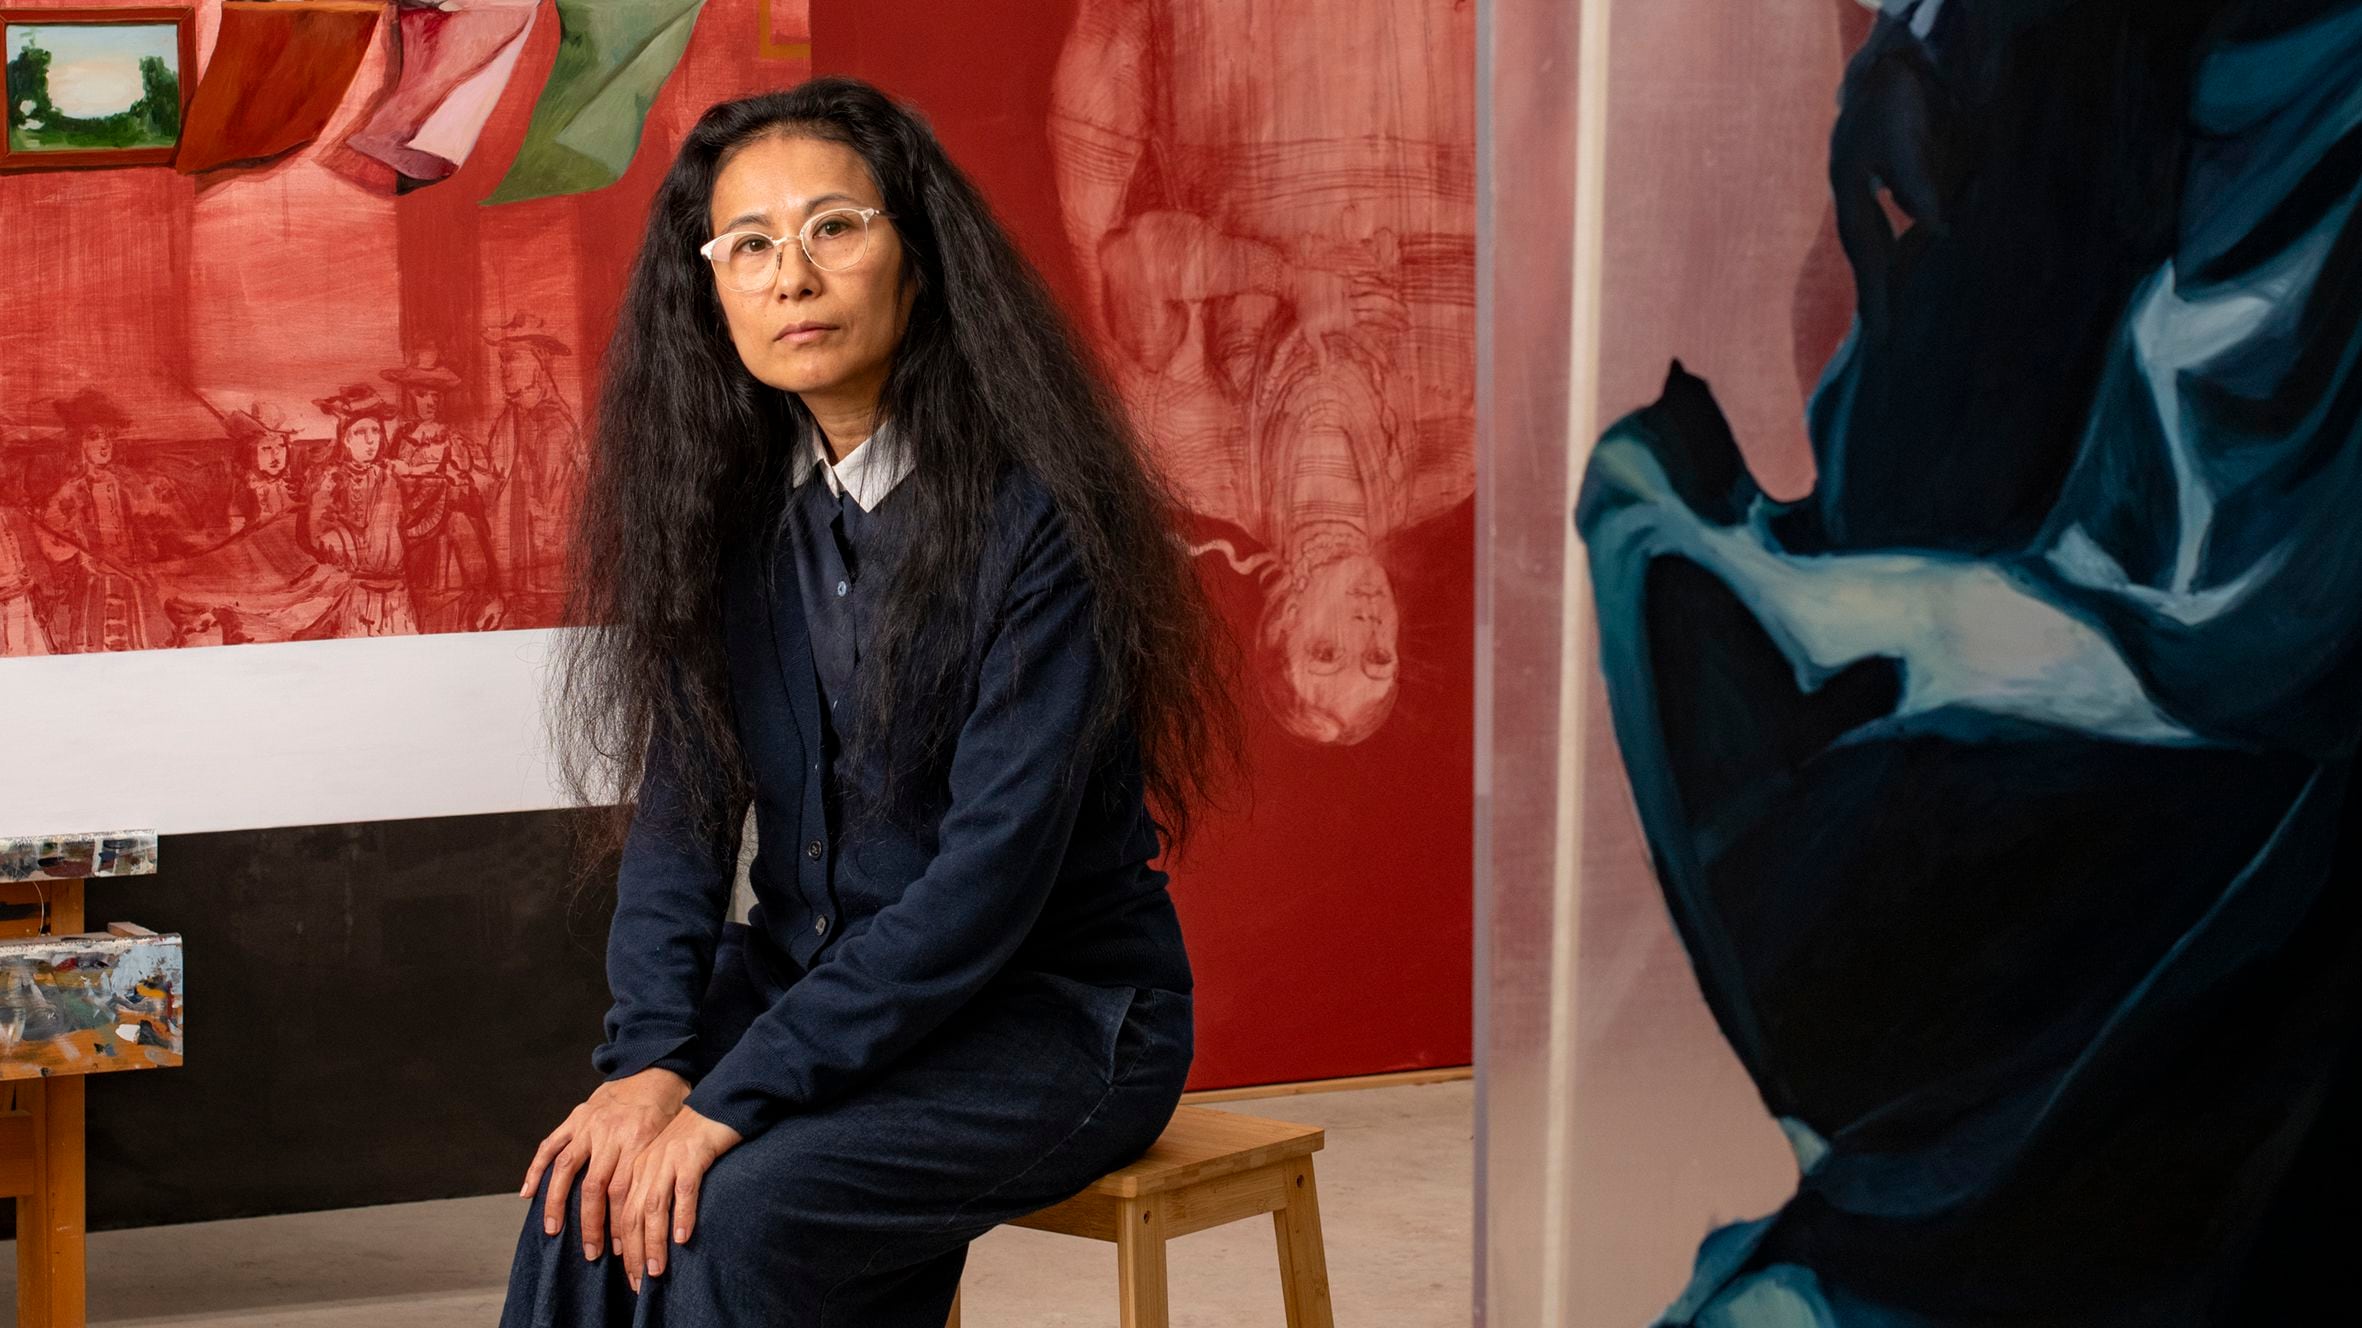 Sandra Gamarra, aires de cambio en el pabellón español de la Bienal de Venecia: “Deberíamos pedir perdón por el colonialismo”